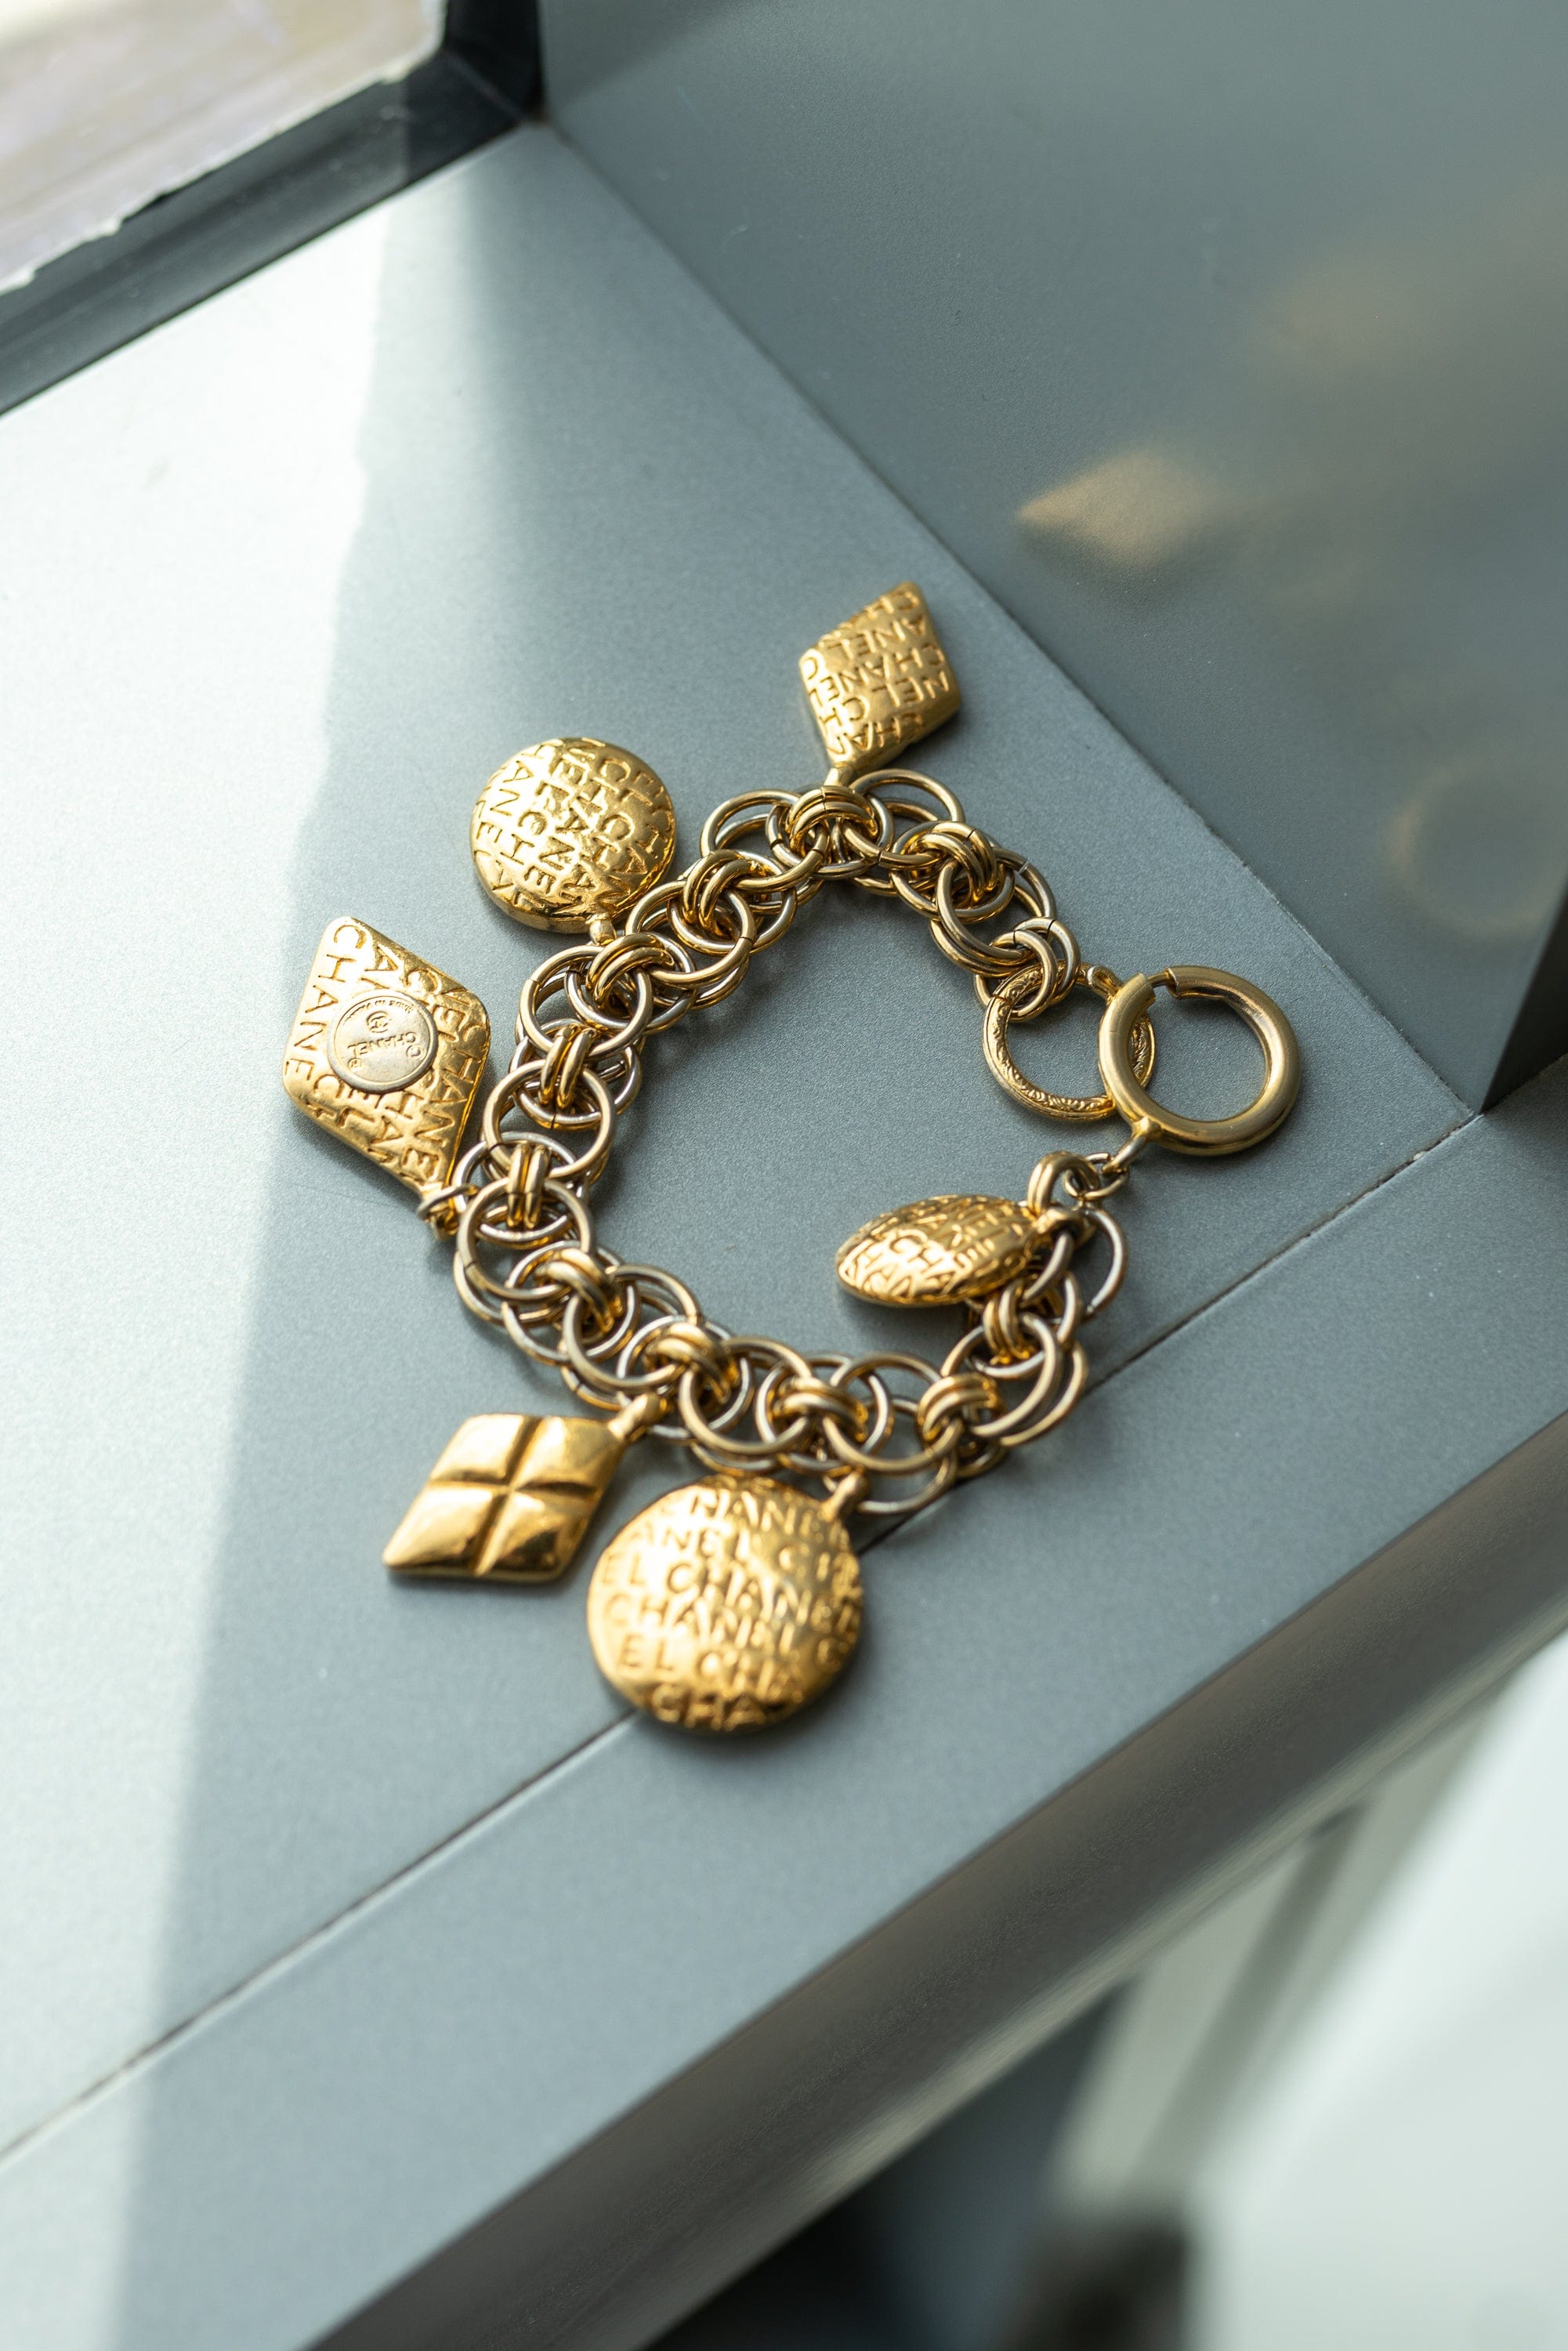 Chanel Mademoiselle Gold Bracelet PXL1357